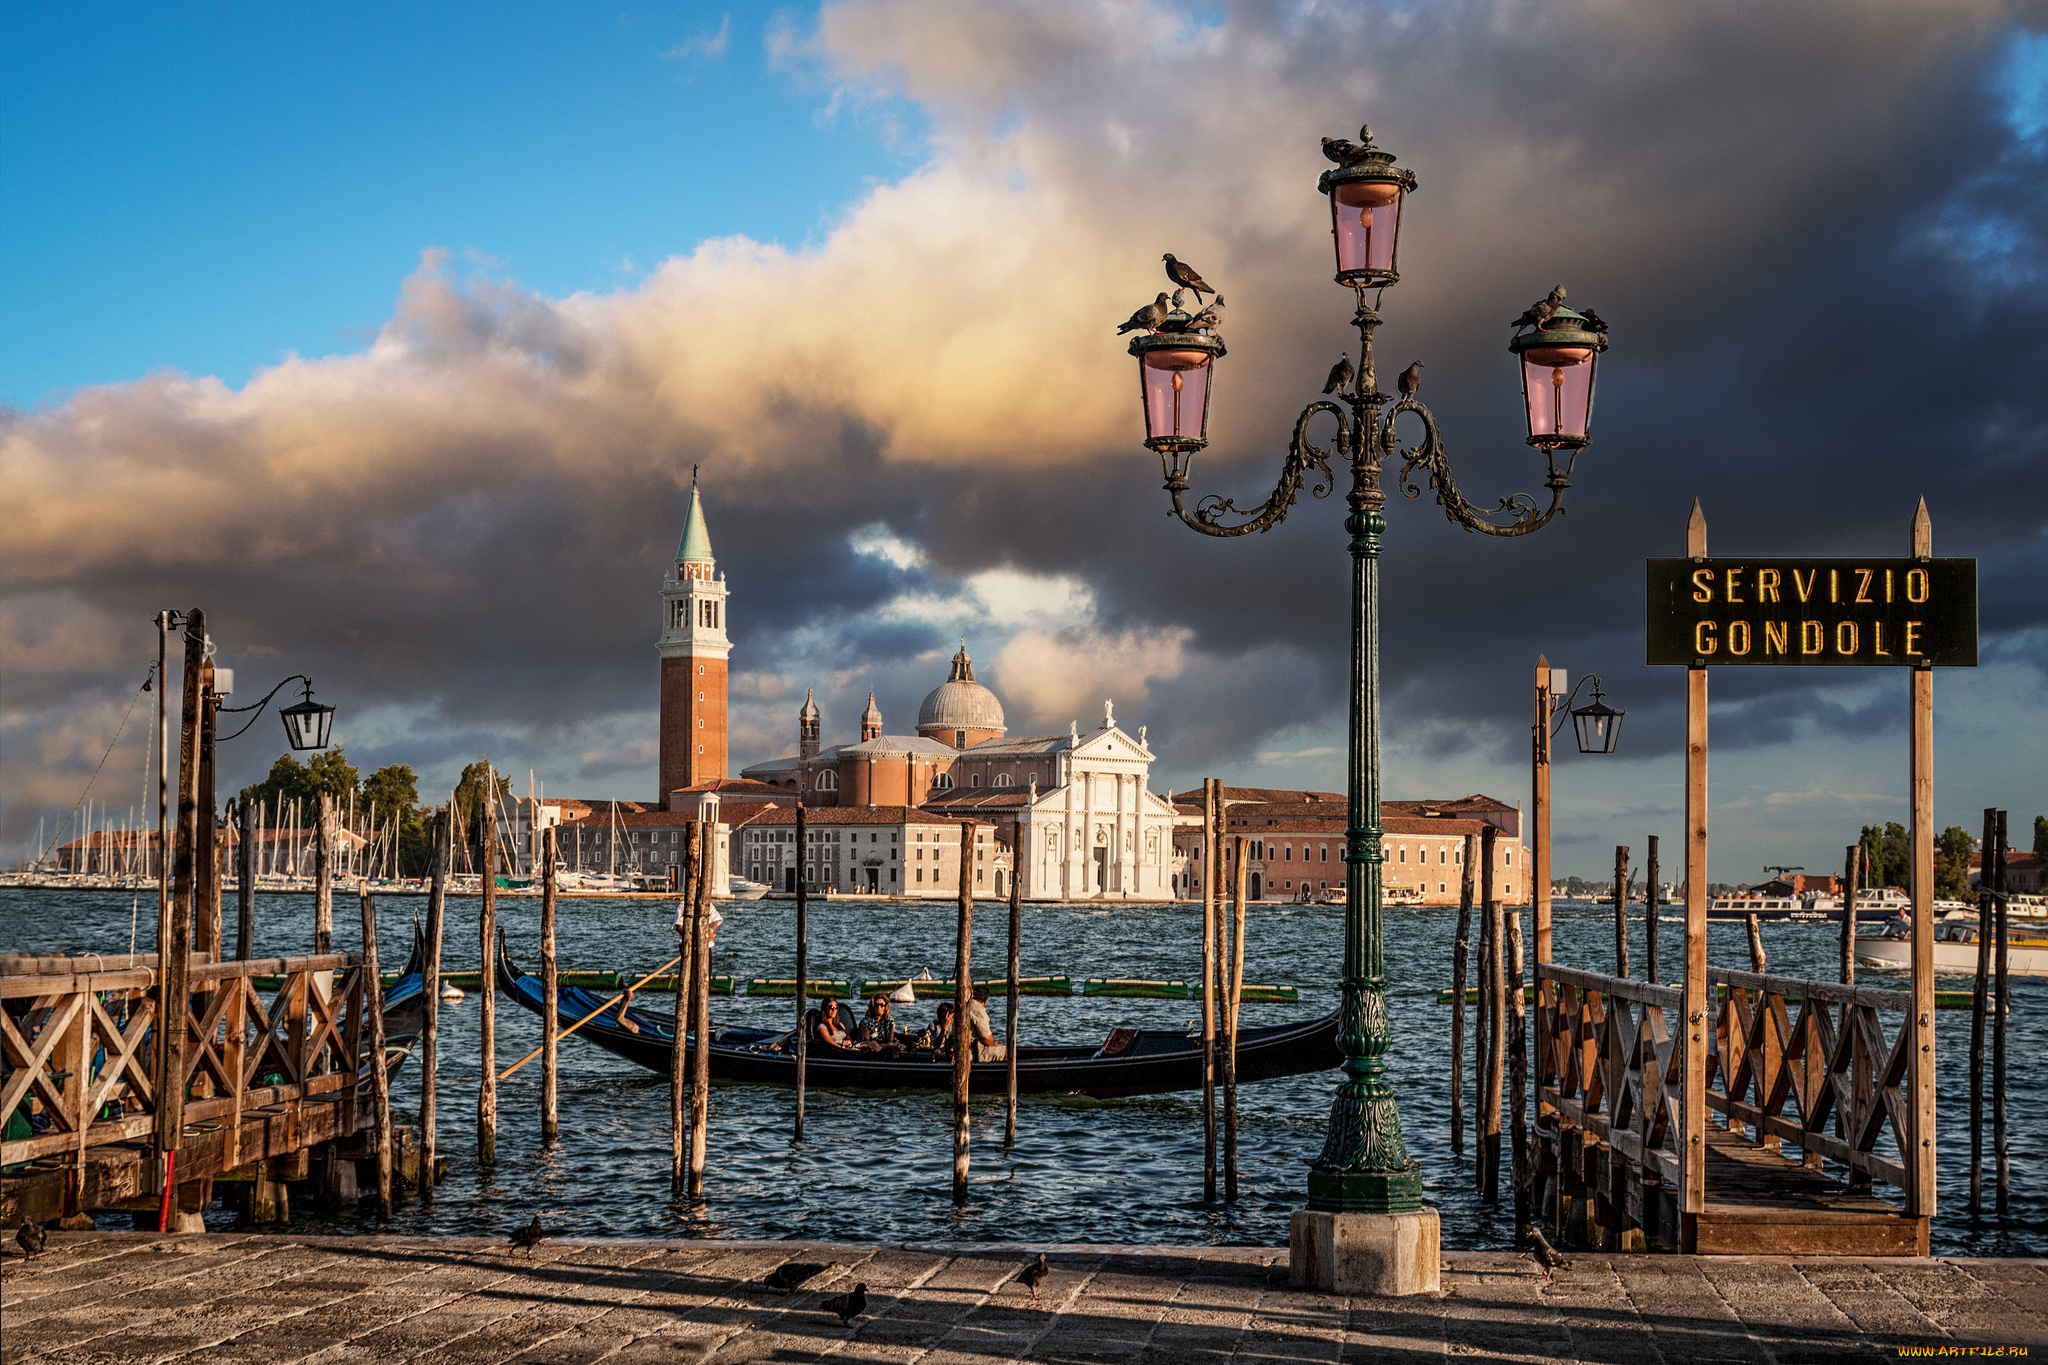 venezia, города, венеция, , италия, канал, дворец, гондола, фонарь, пристань